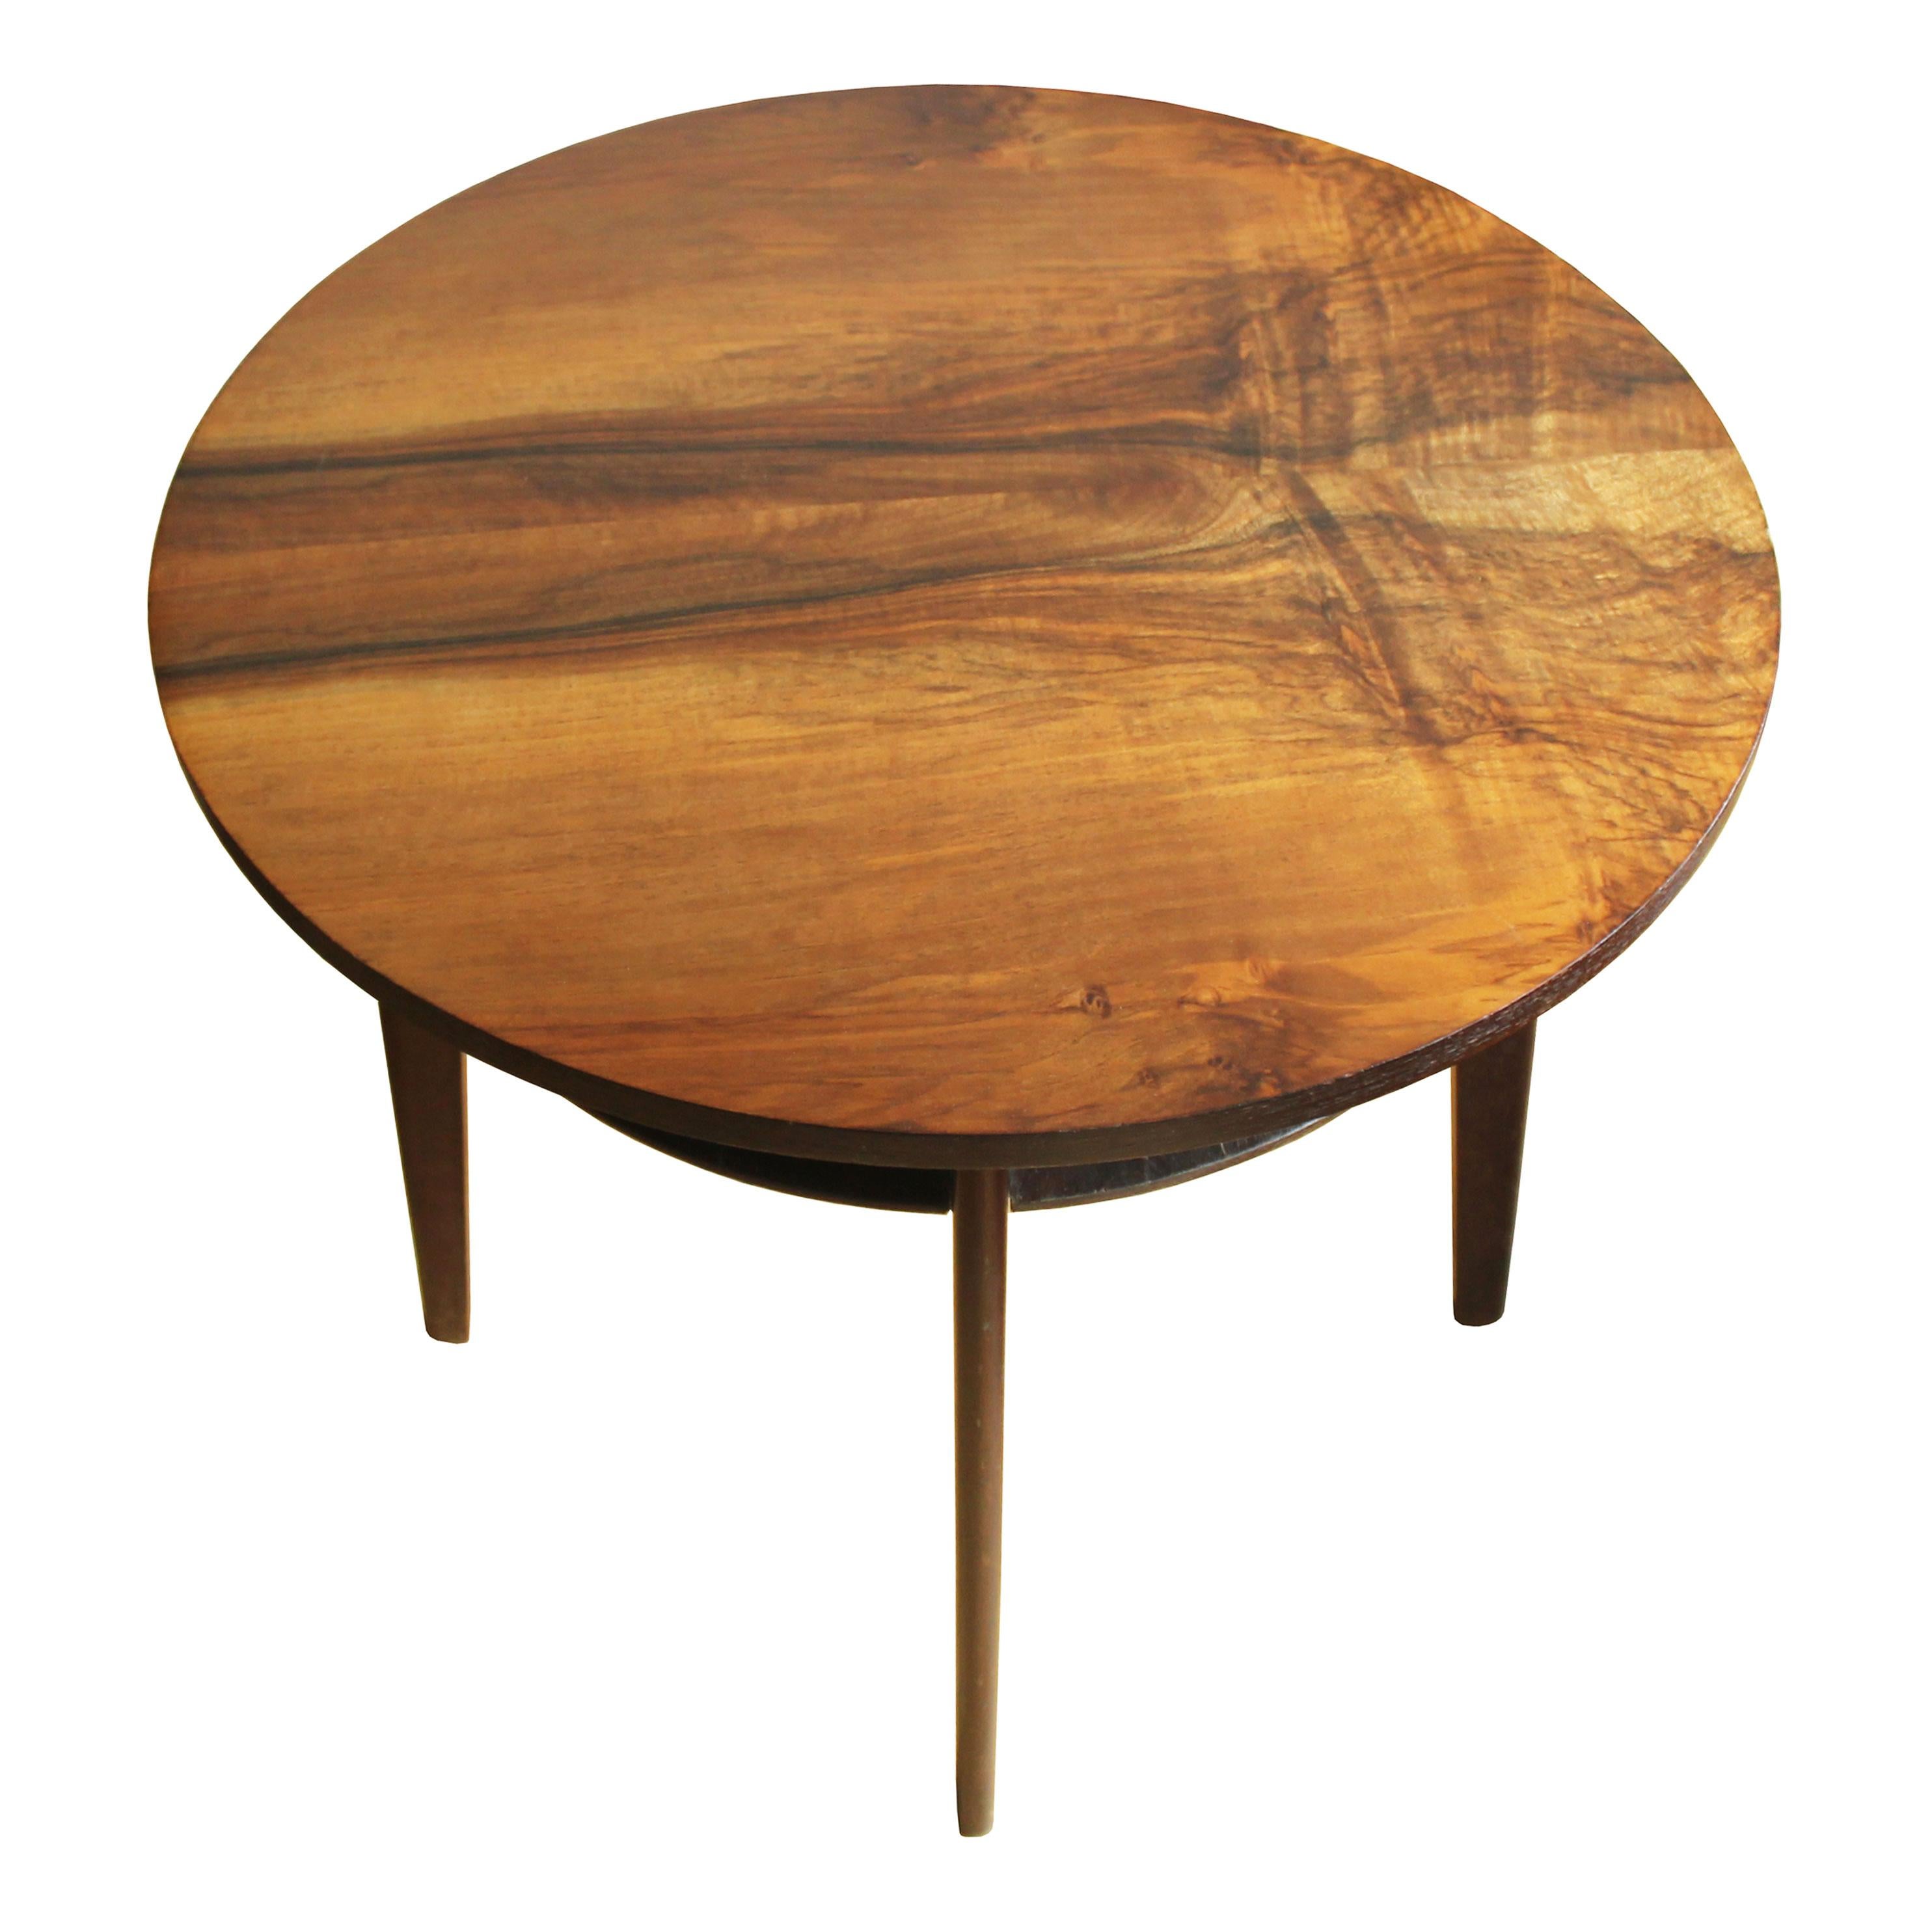 Cette table basse ronde a été conçue et produite dans les années 1960 en Tchécoslovaquie. Il se compose de quatre pieds tamisés, d'un plateau circulaire avec une texture frappante en placage de noyer et d'une autre couche ronde et fine en bois de